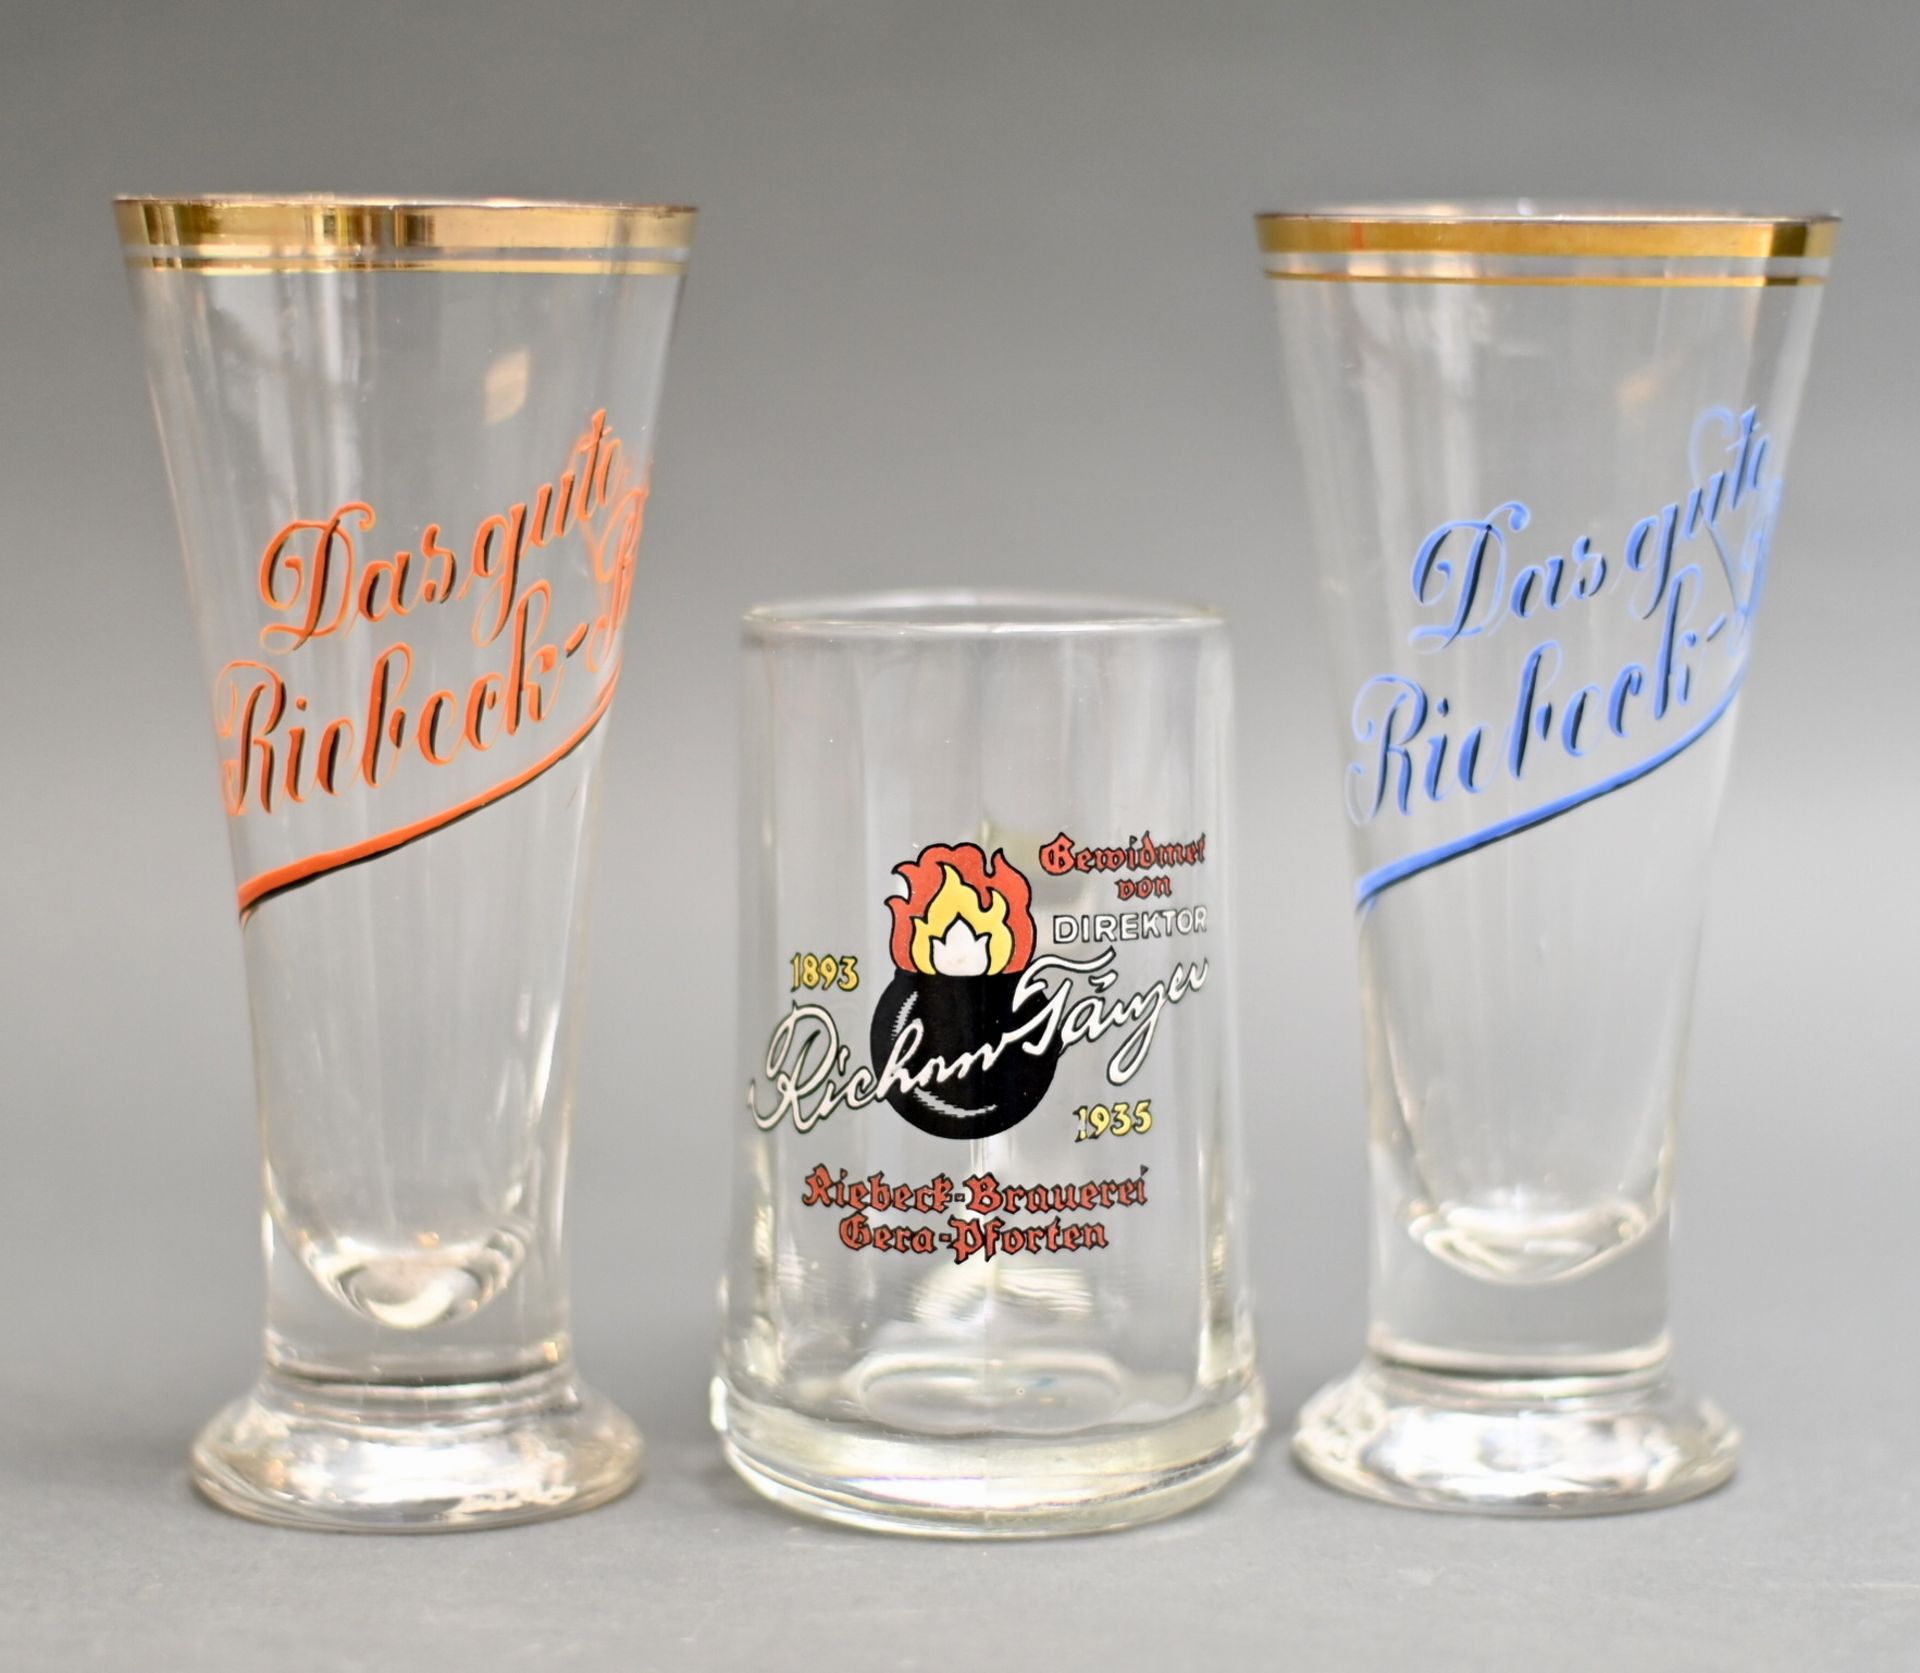 Drei Gläser "Riebeck-Brauerei Gera-Pforten", Henkelglas gewidmet 1935 von Direktor R.Tänzer, 0,3l,